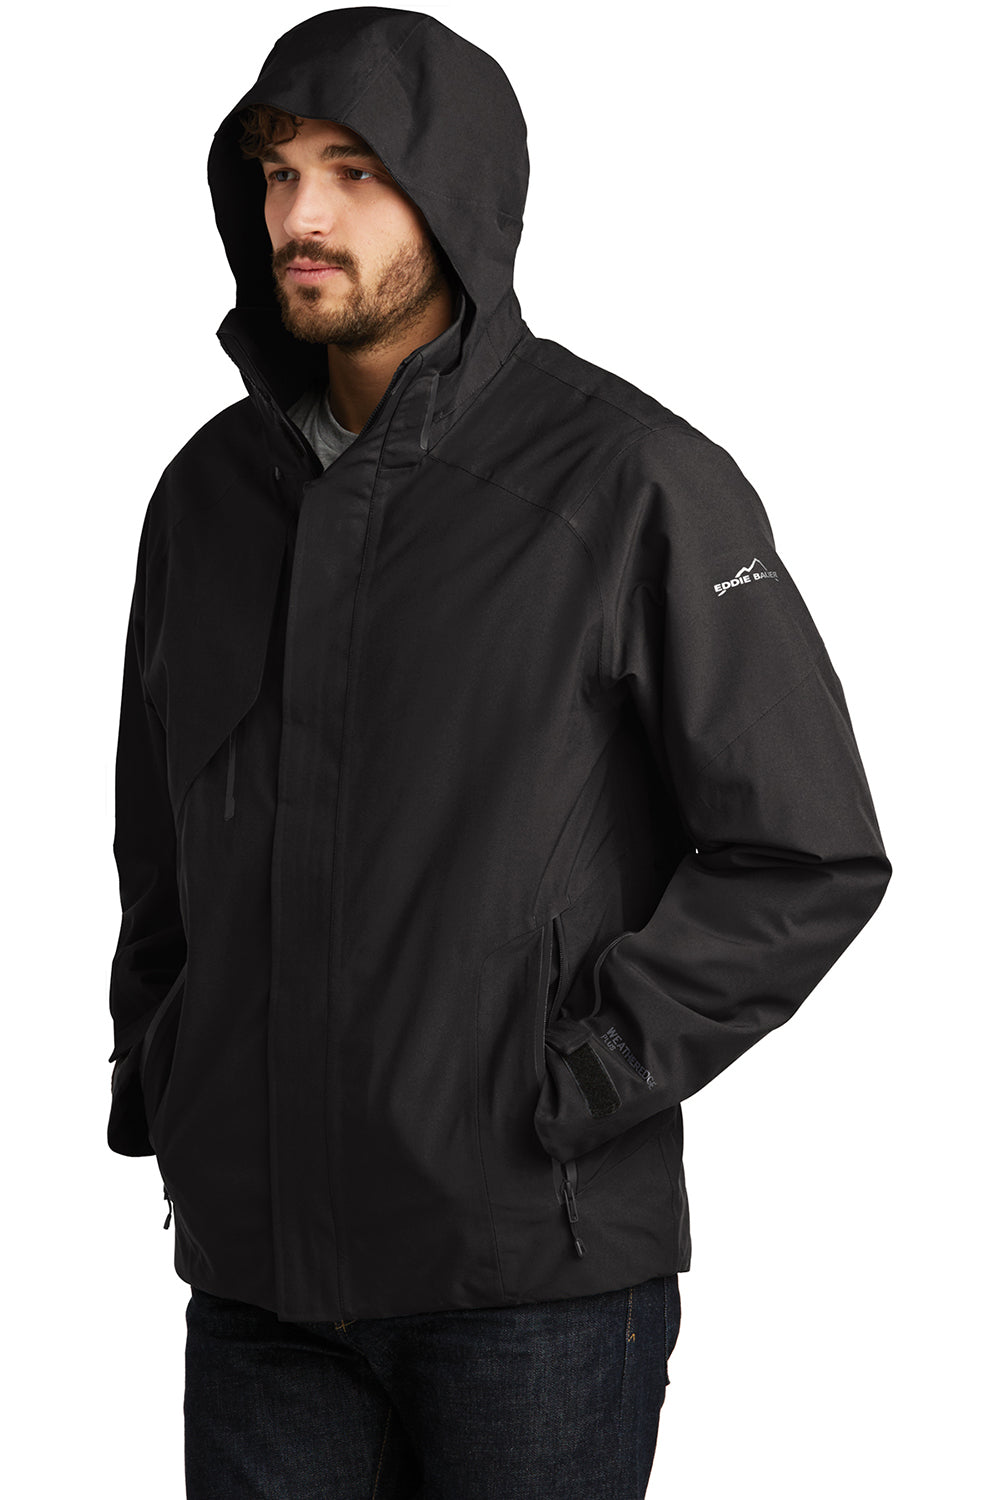 Eddie Bauer EB554 Mens WeatherEdge Plus Waterproof Full Zip Hooded Jacket Black Model 3Q